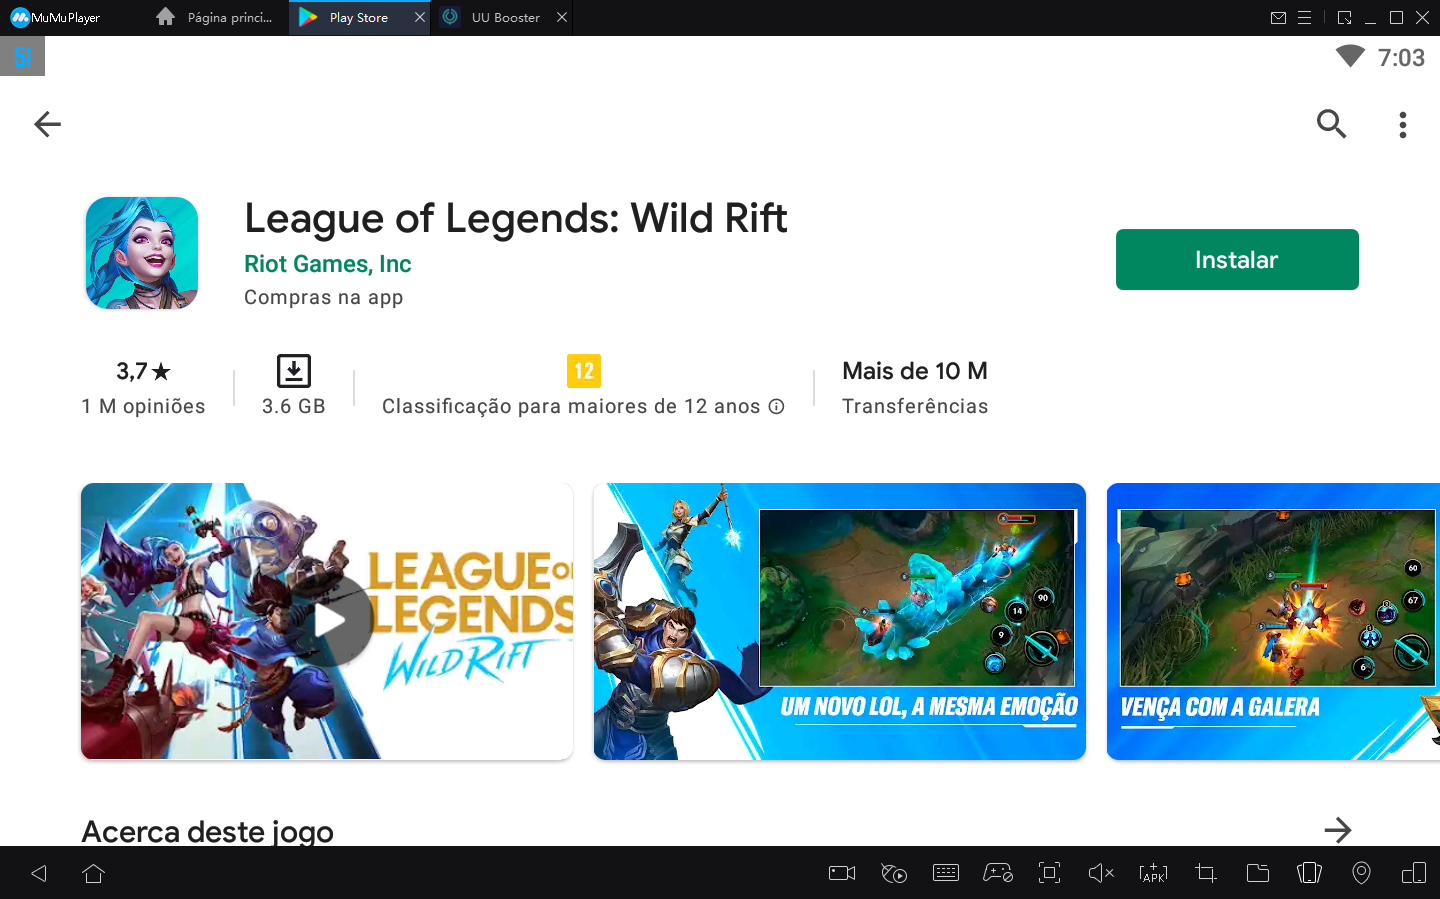 Como jogar League of Legends: Wild Rift no PC a 120 fps com MuMu Player1